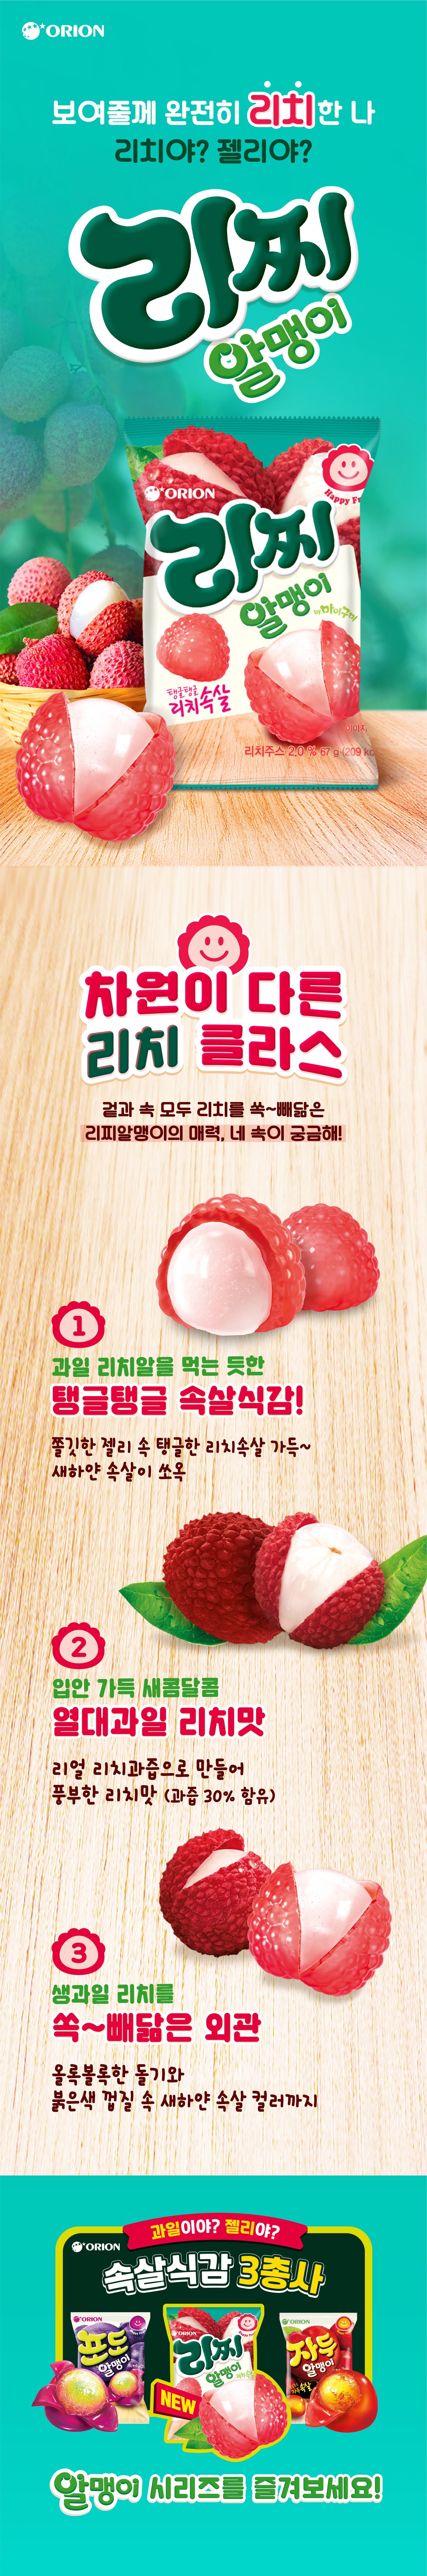 韓國食品-[오리온] 마이구미 리치 (리찌알맹이) 67g